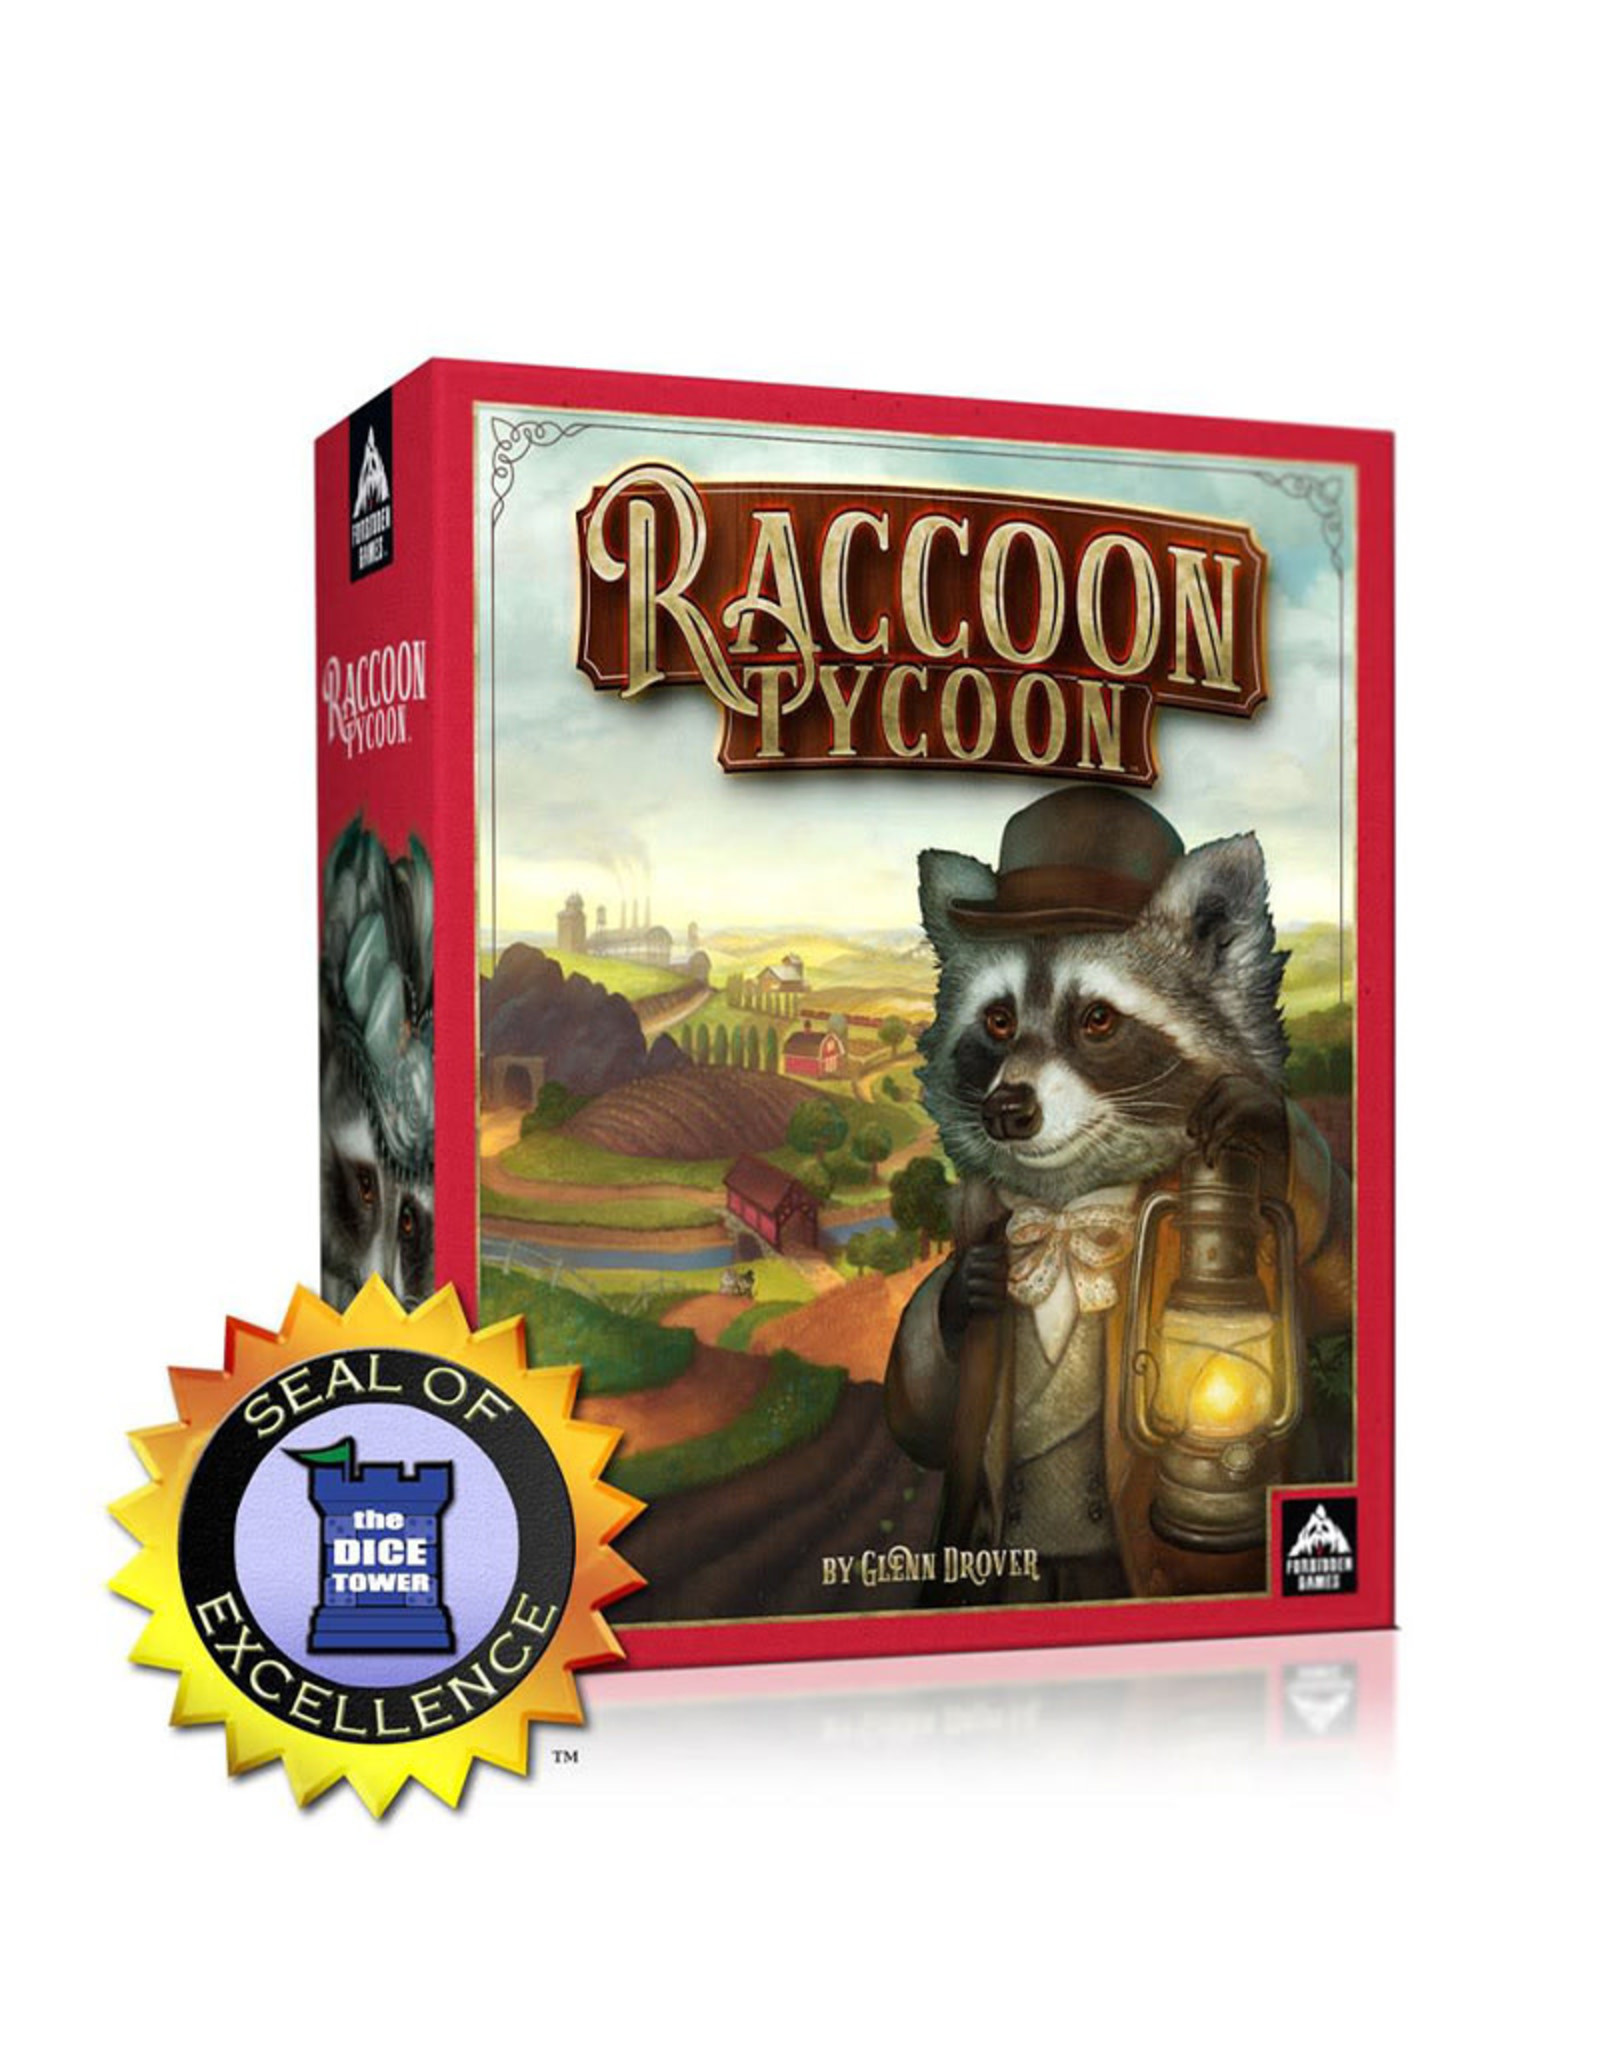 Misc Raccoon Tycoon